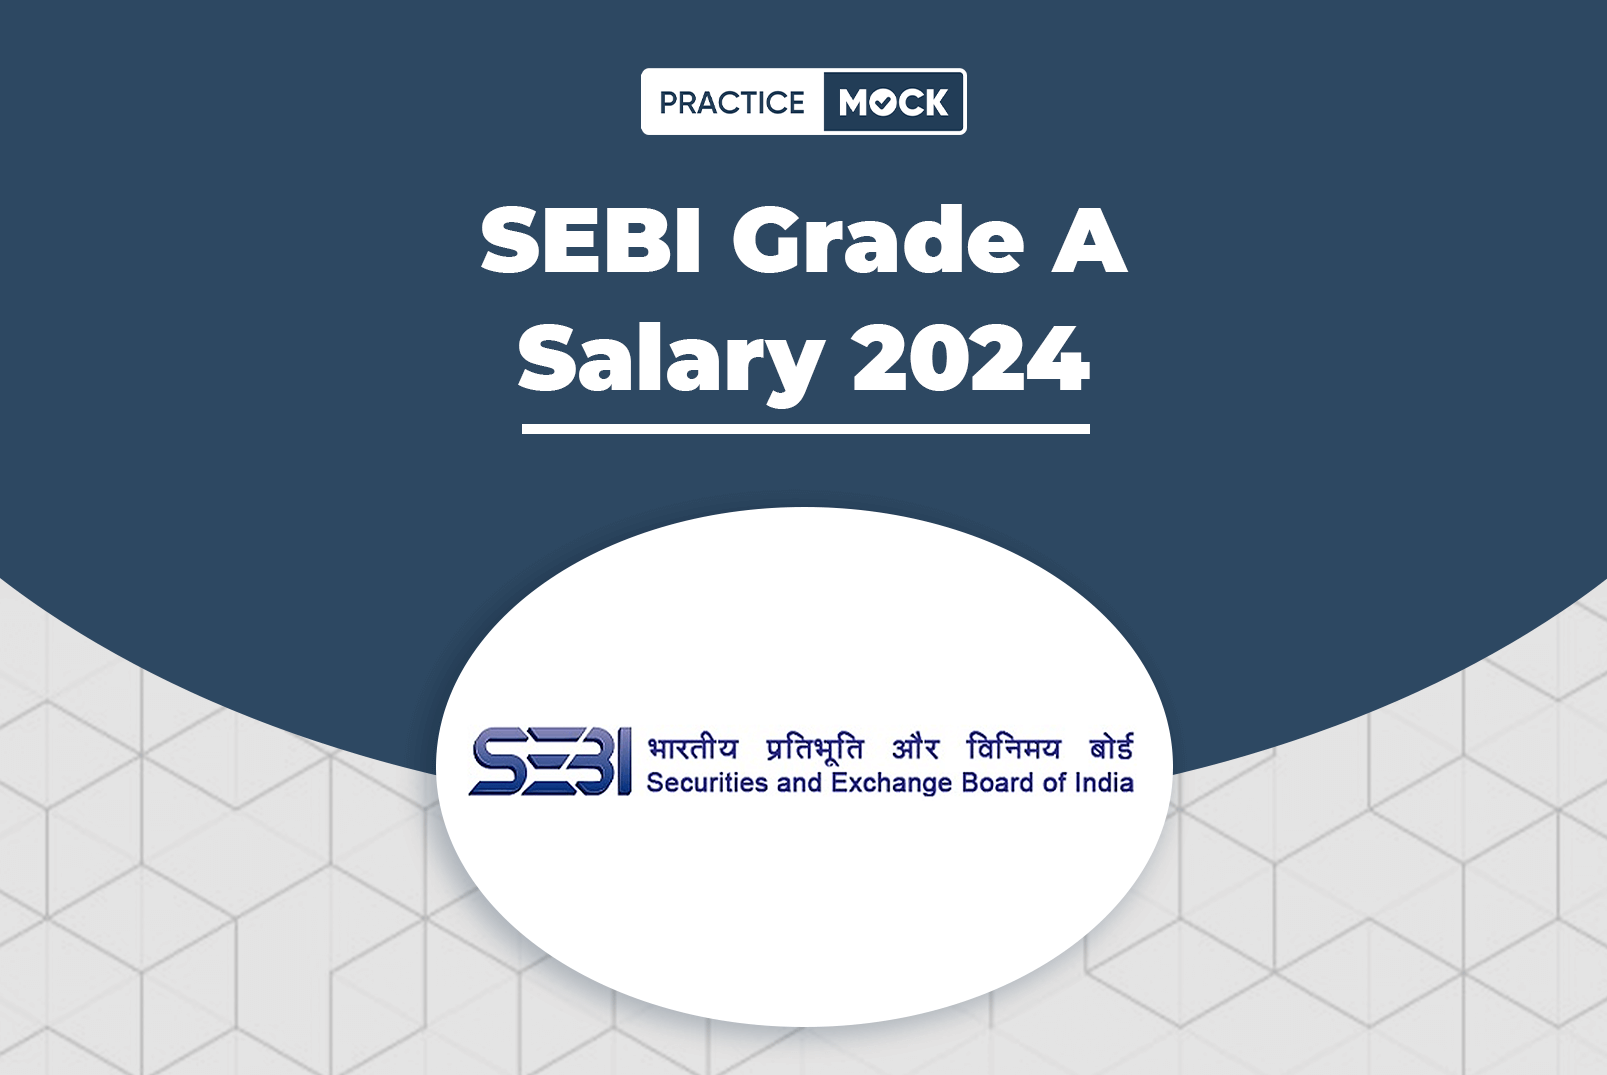 SEBI Grade A Salary 2024